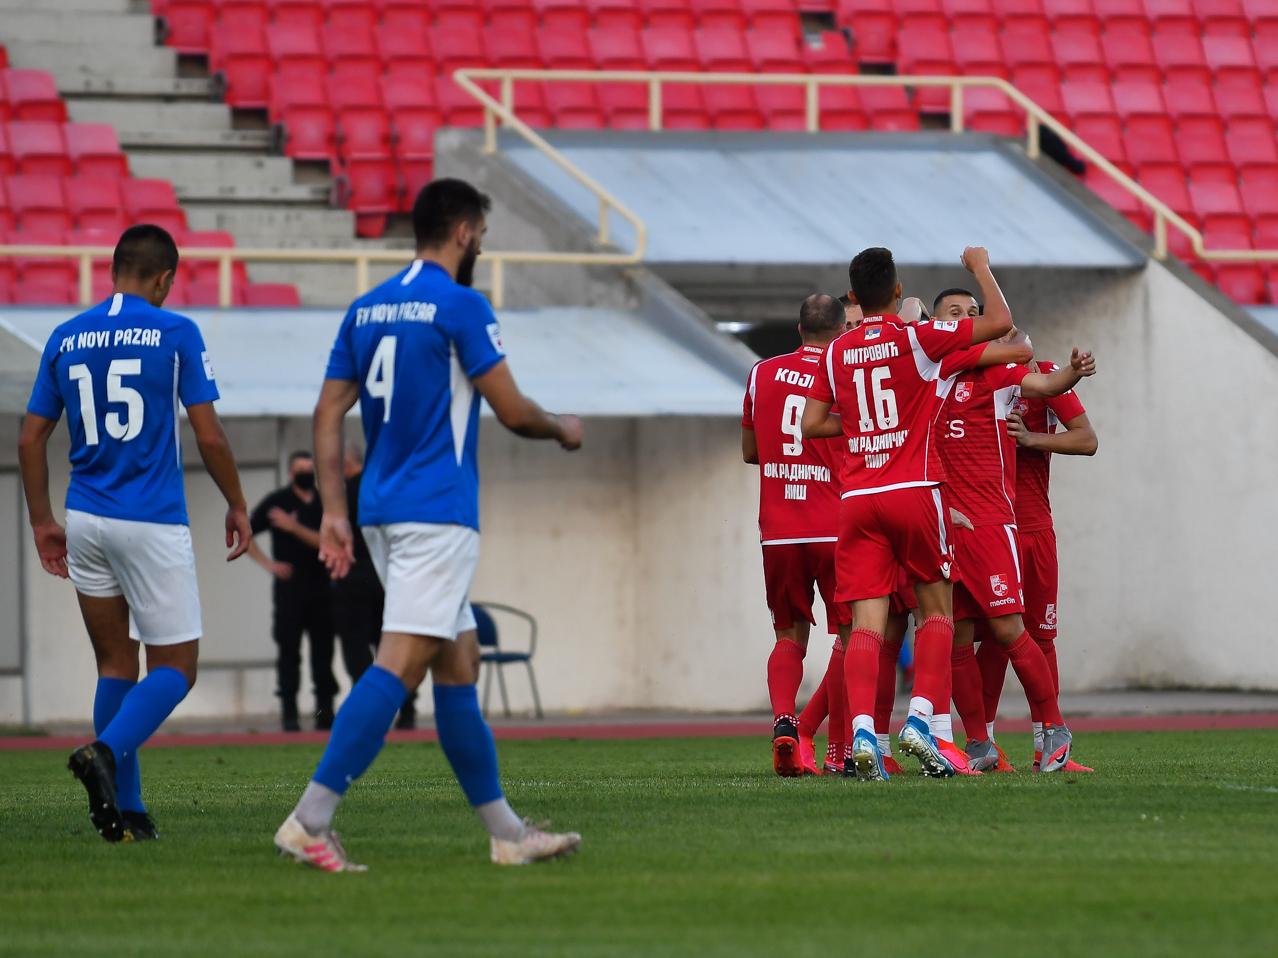 Dušan Stoiljković ▫ FK Radnički Niš & FK Novi Pazar ▫ Winger